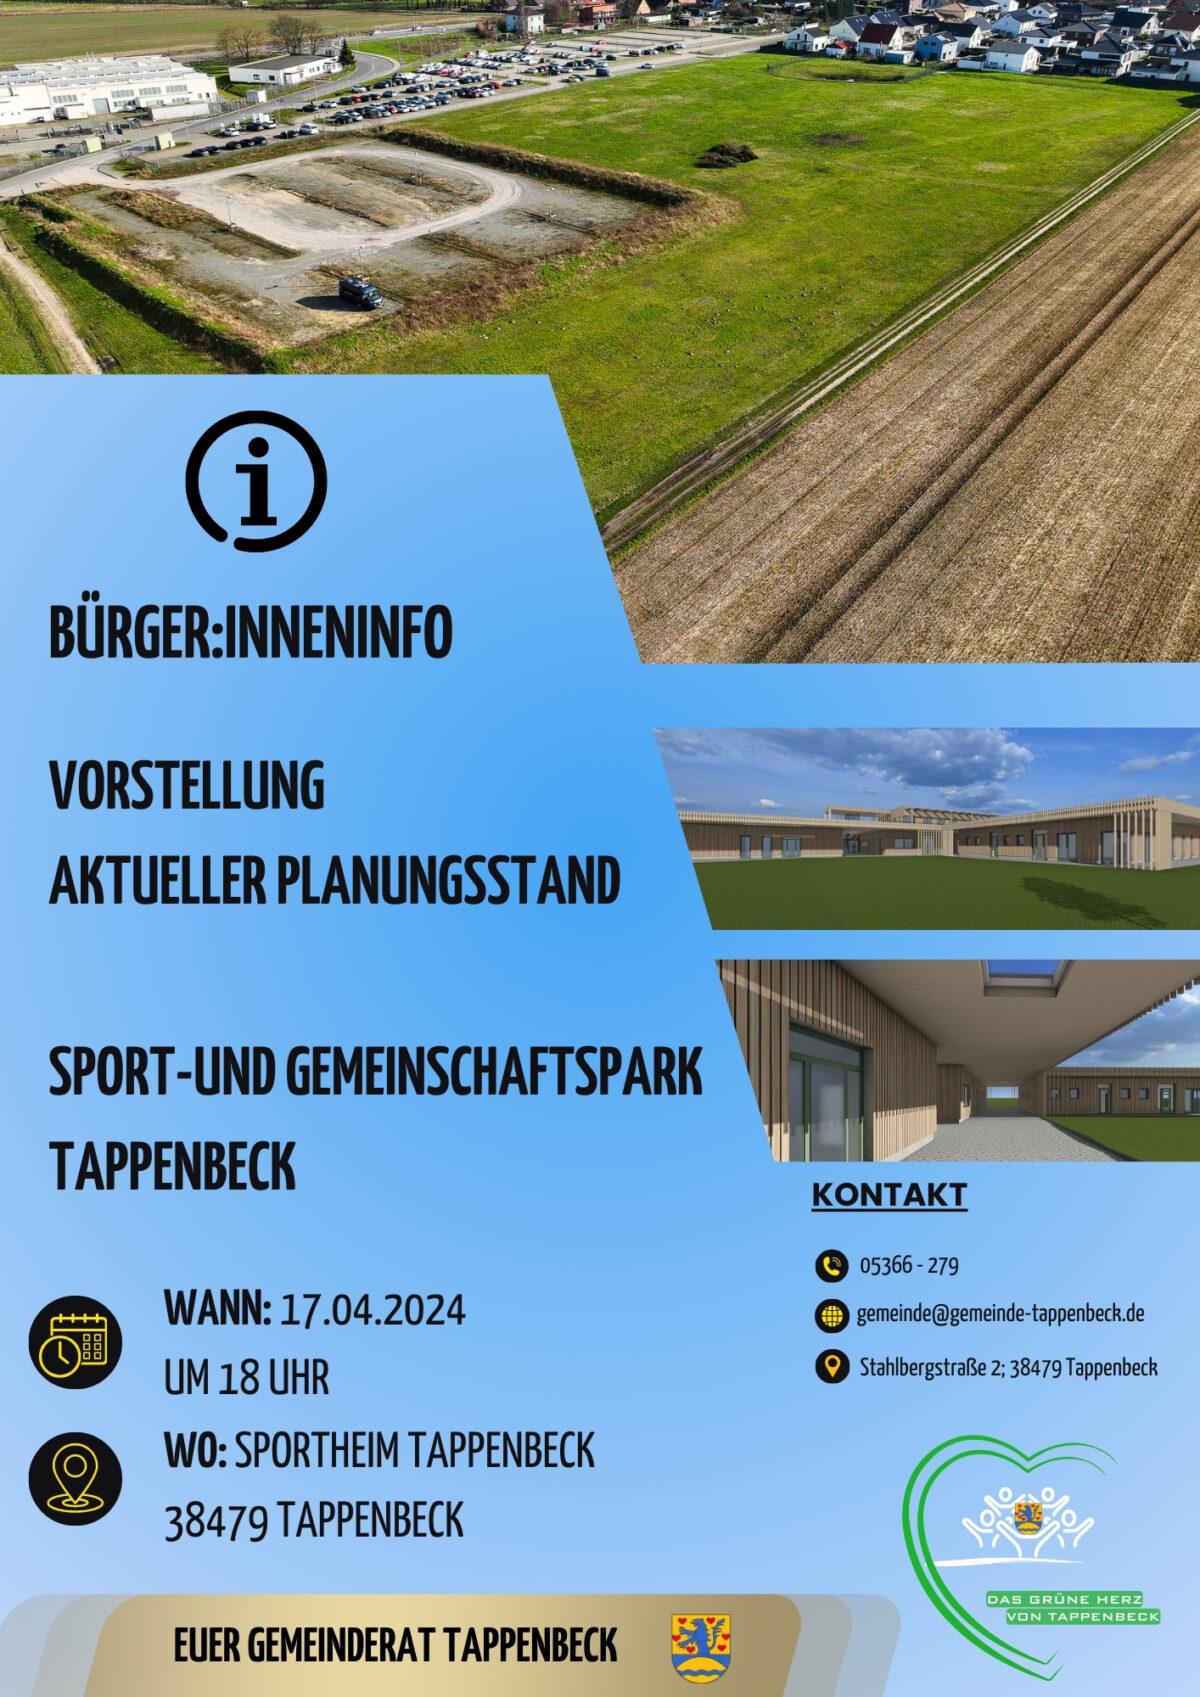 Einladung zum Infoabend am Mittwoch, 17.04.2024 um 18 Uhr in das bestehende Sportheim der Gemeinde Tappenbeck